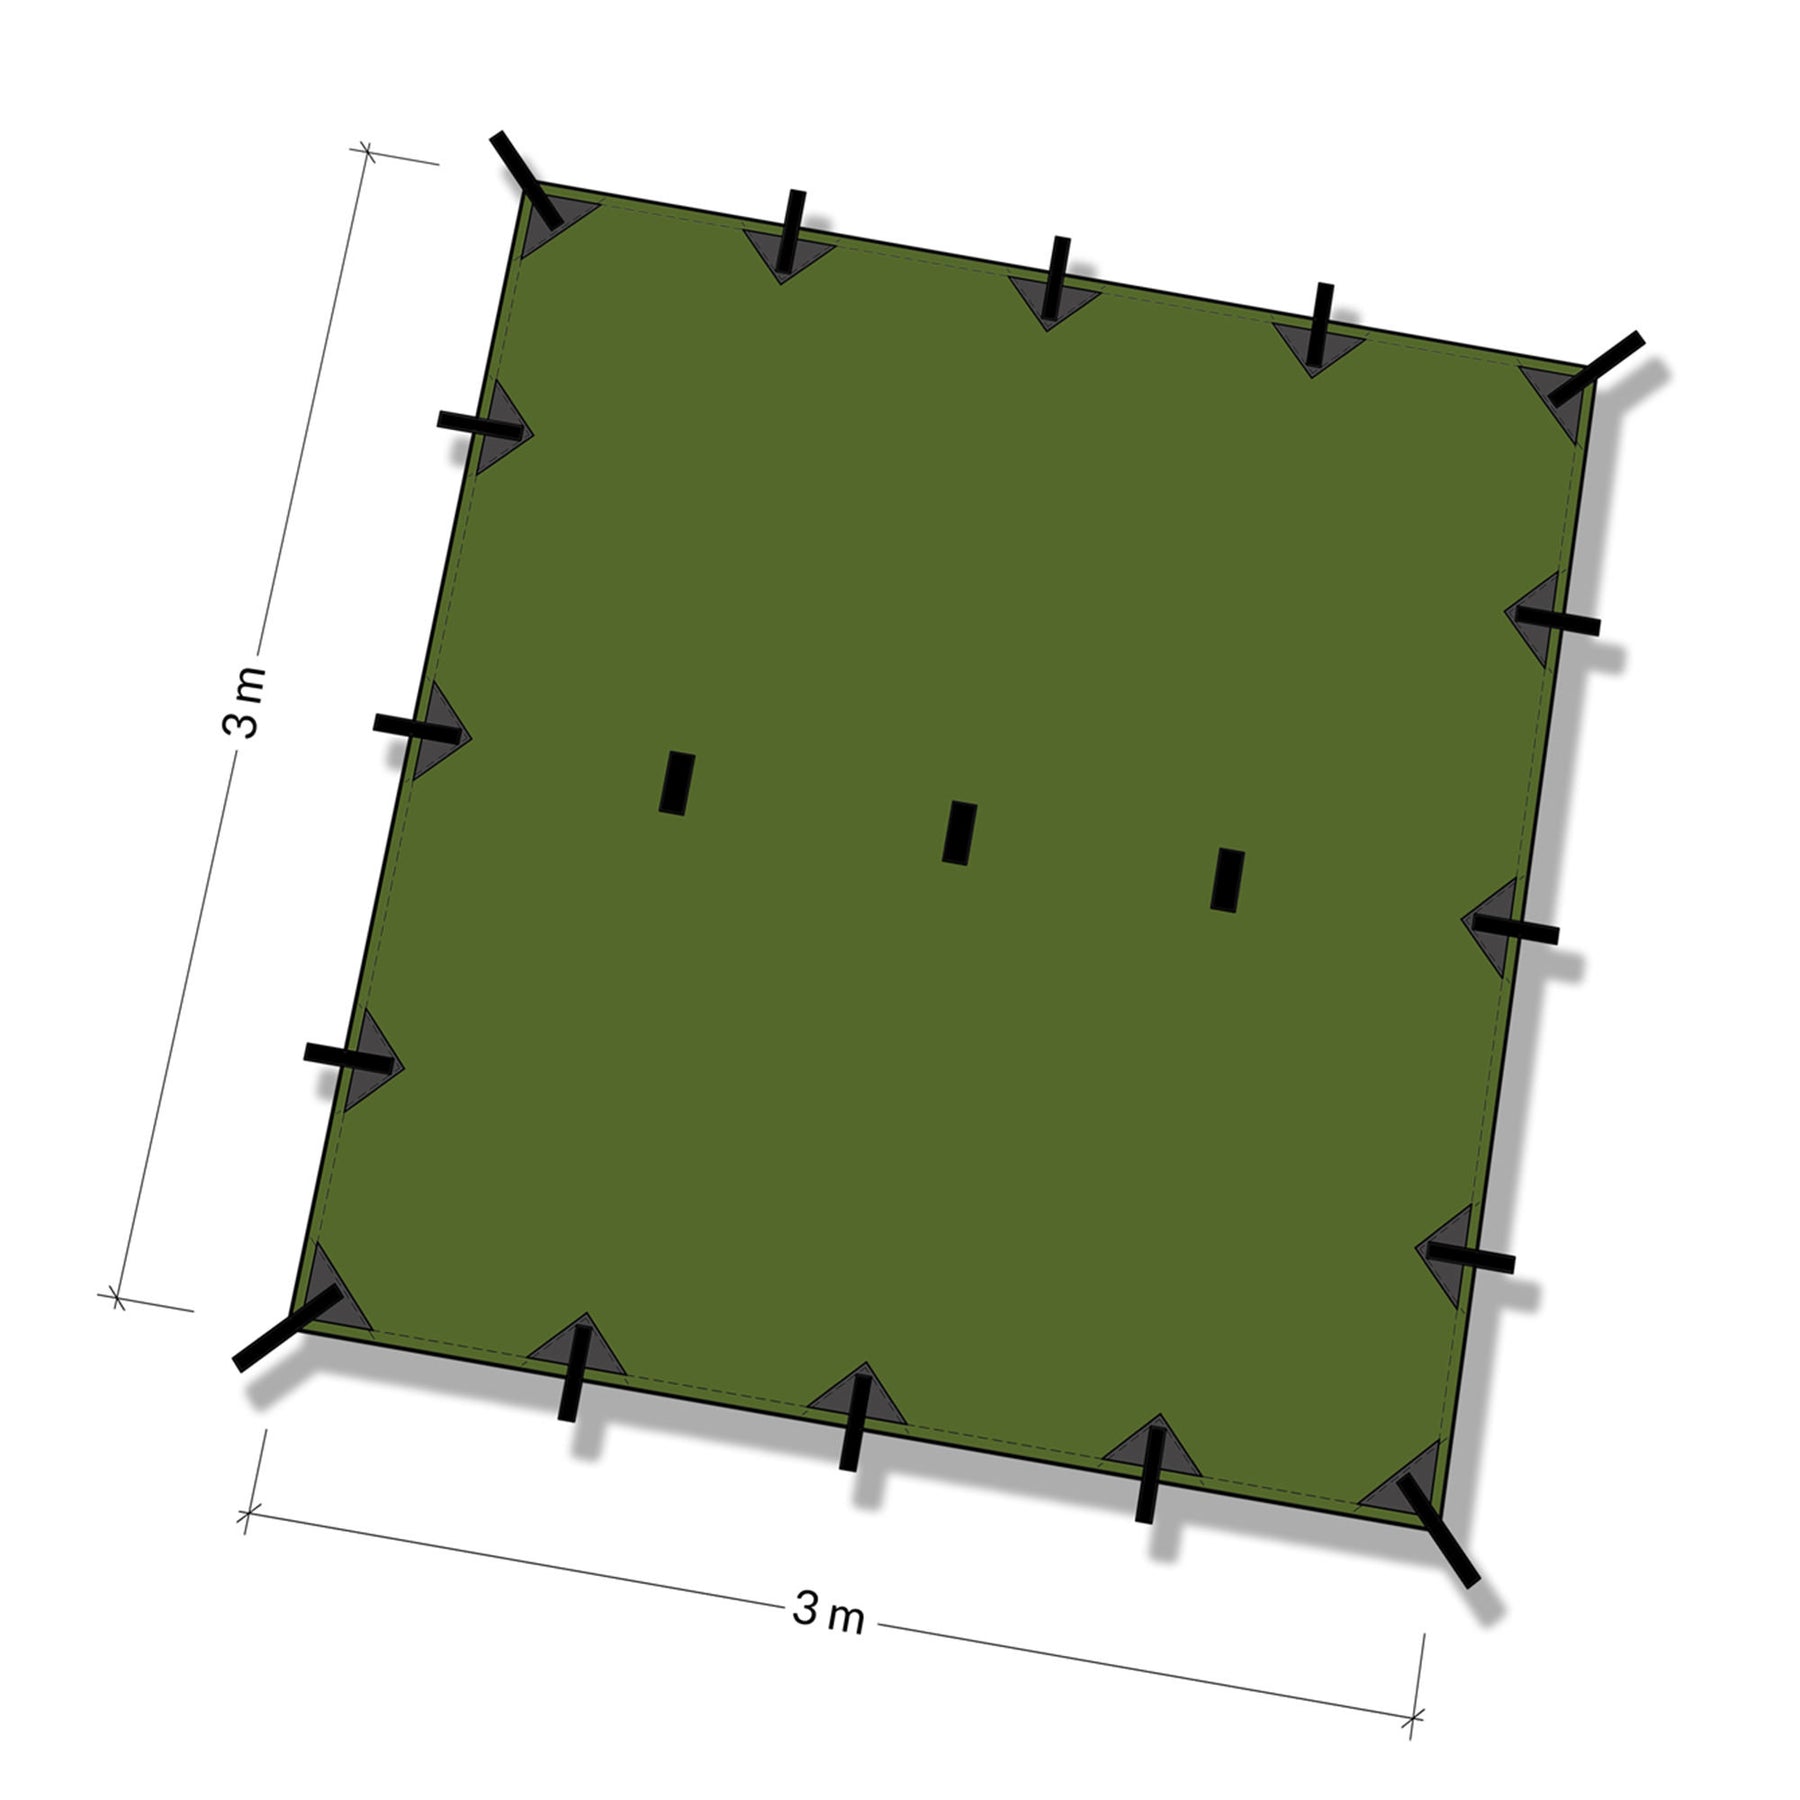 DD Tarp 3x3 olive green - illustrazione con quote per misura in metri